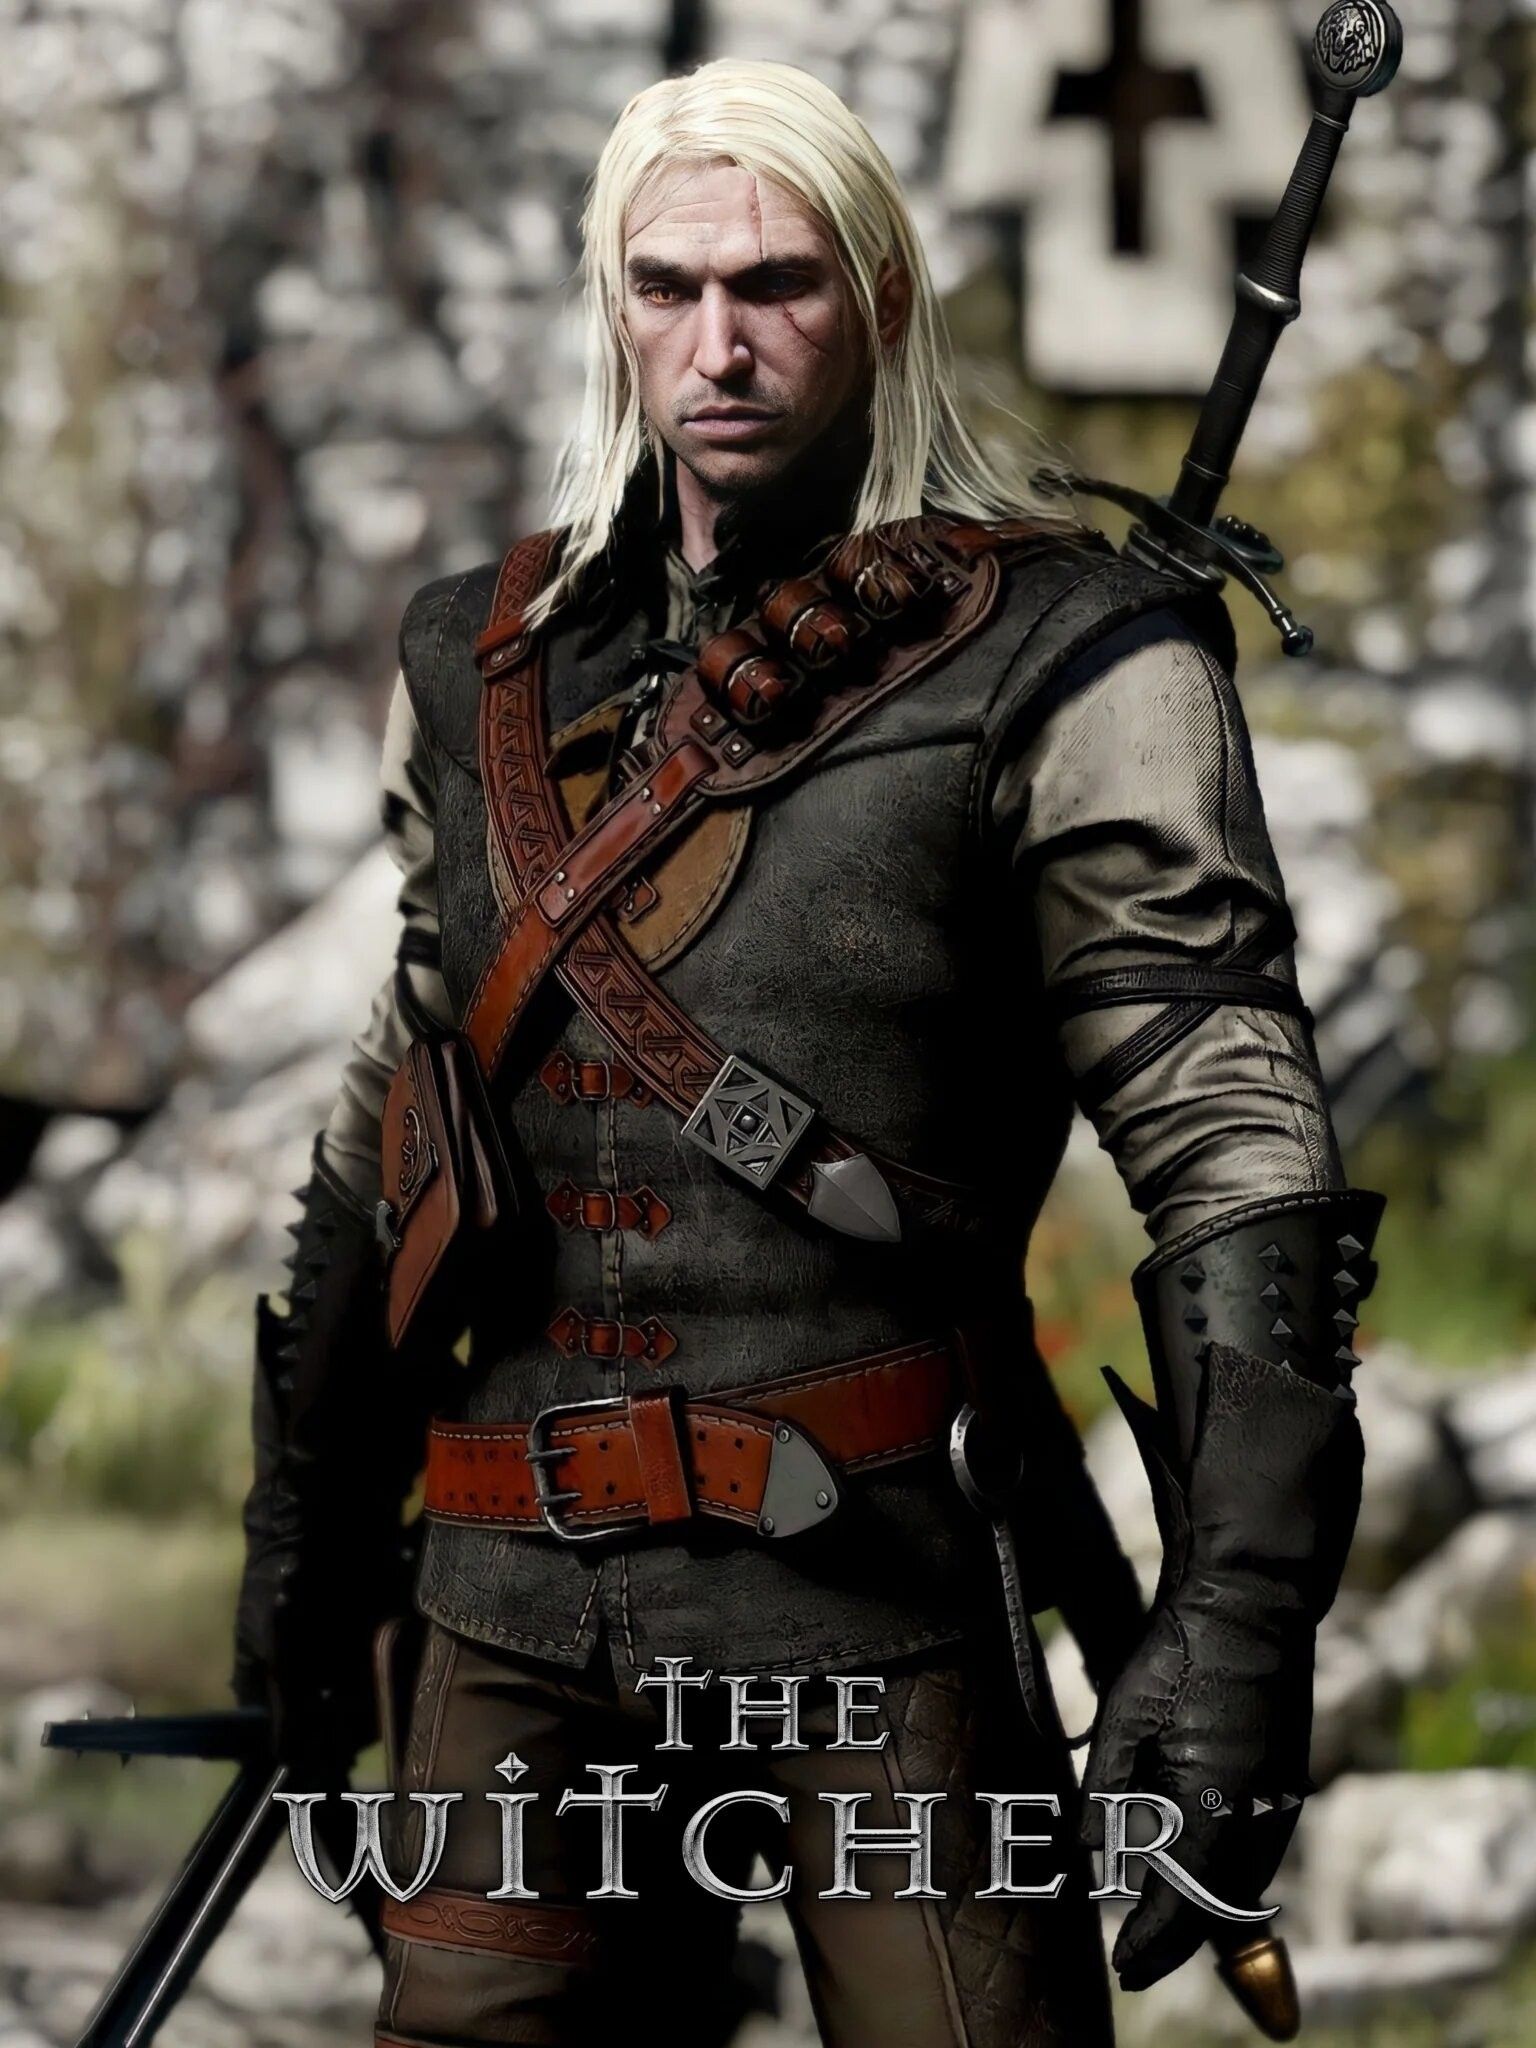 Геральт из Ривии — внешность из первой игры The Witcher, но с обновленной графикой. Автор: Heel_Rider. Источник: reddit